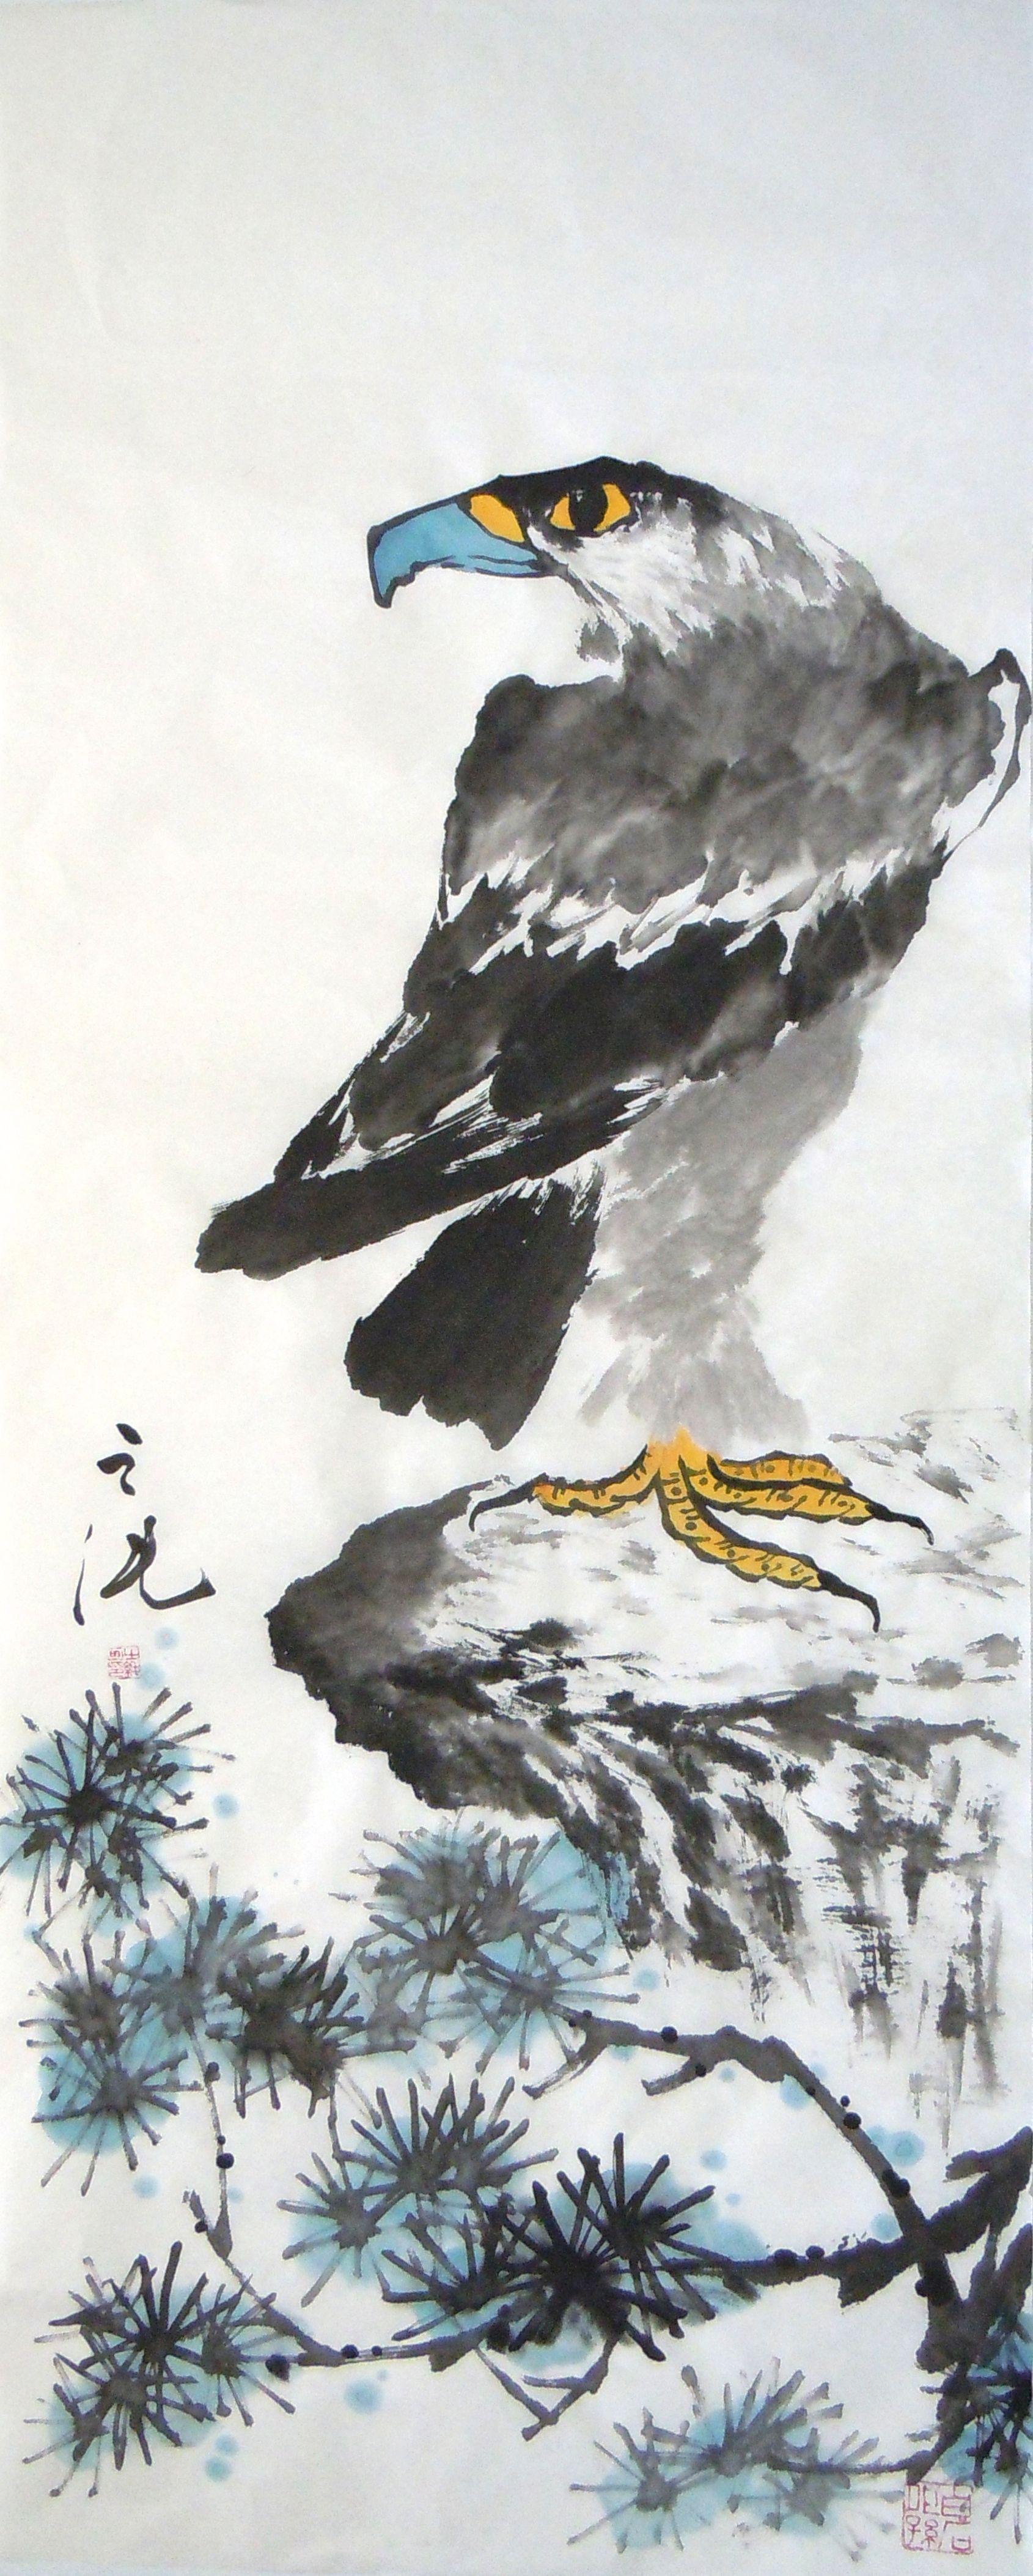 Japanese Eagle Art Wallpapers